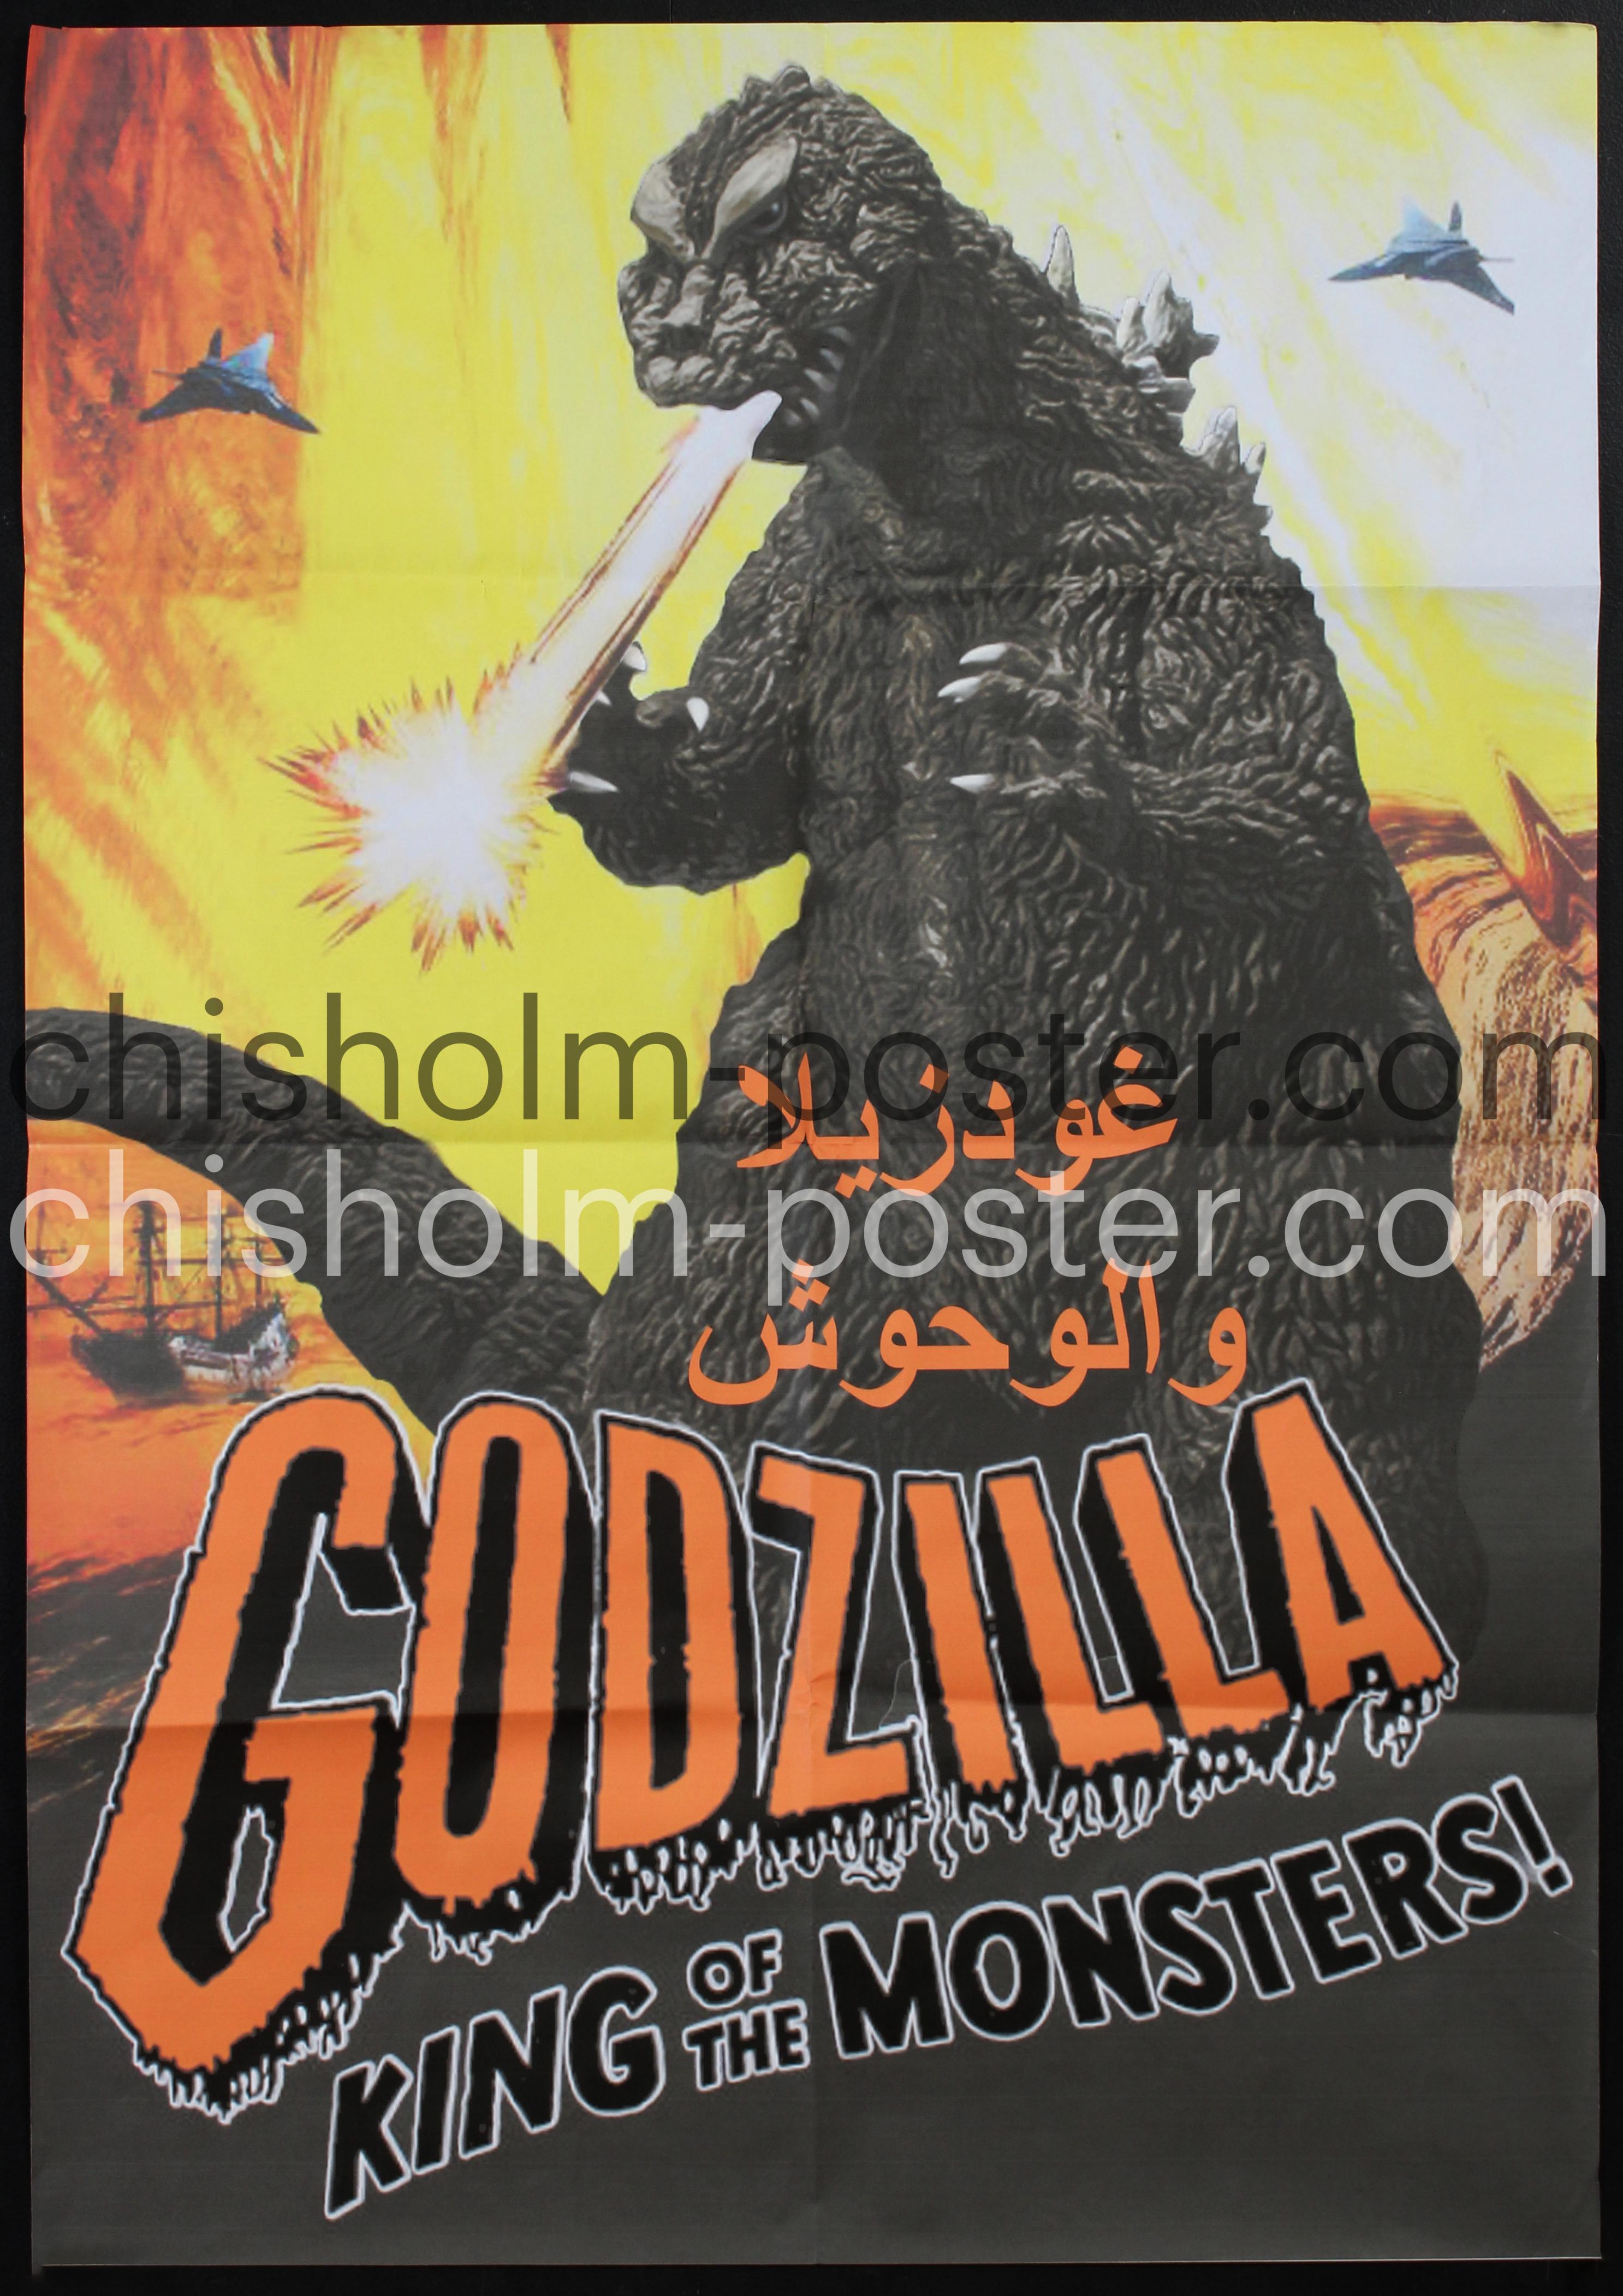 Egyptian Movie No. 331 - Godzilla, King of the Monsters! (Kaiju O 